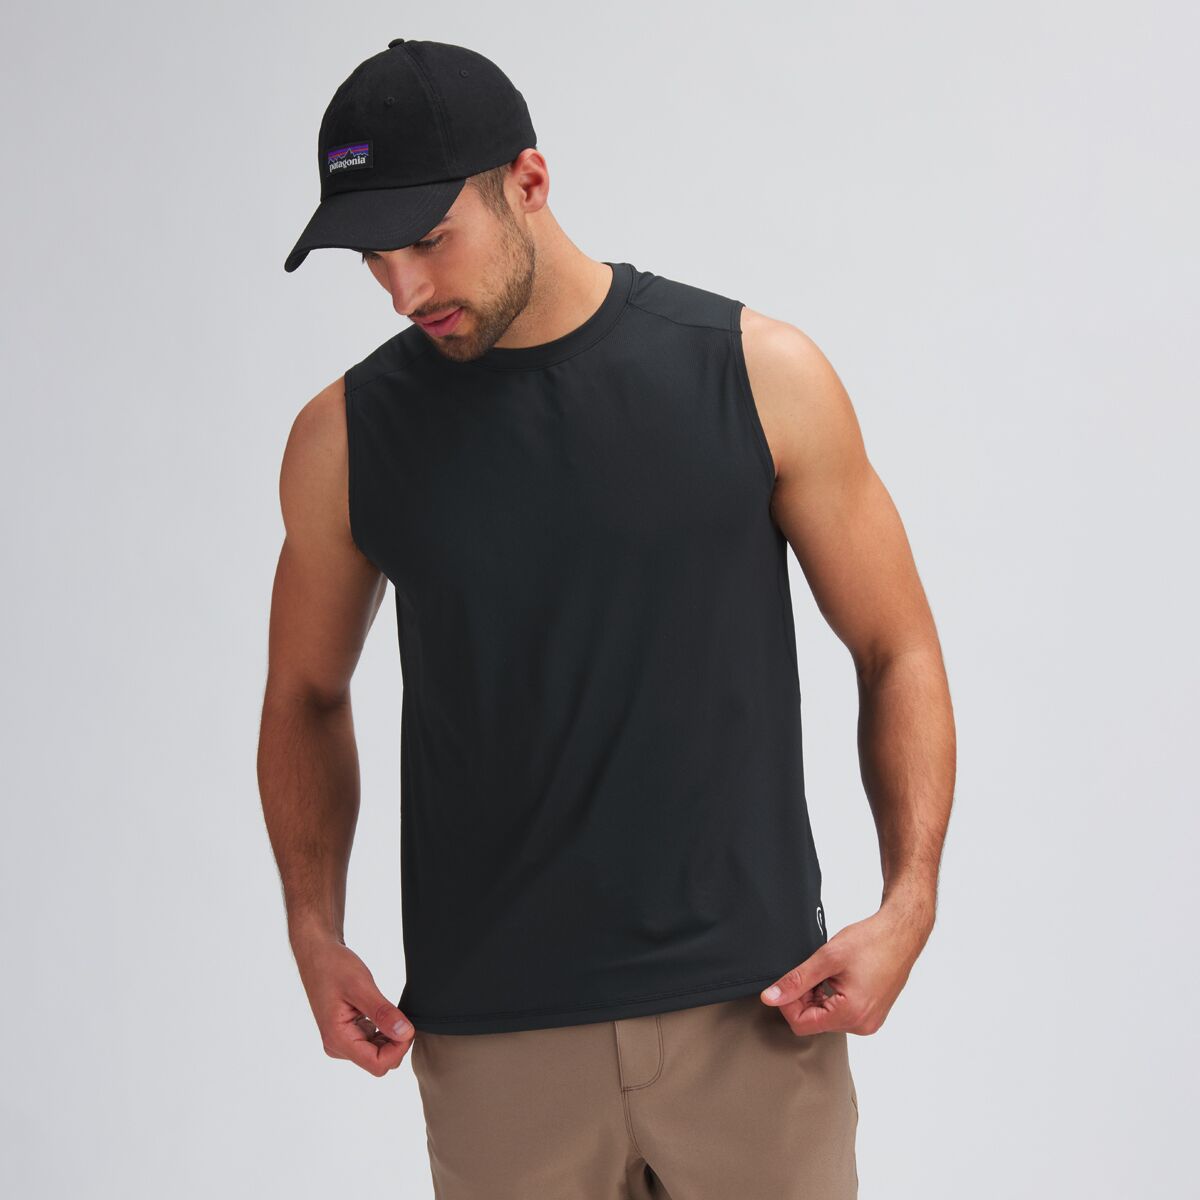 Backcountry Tech Muscle T-Shirt - Men's